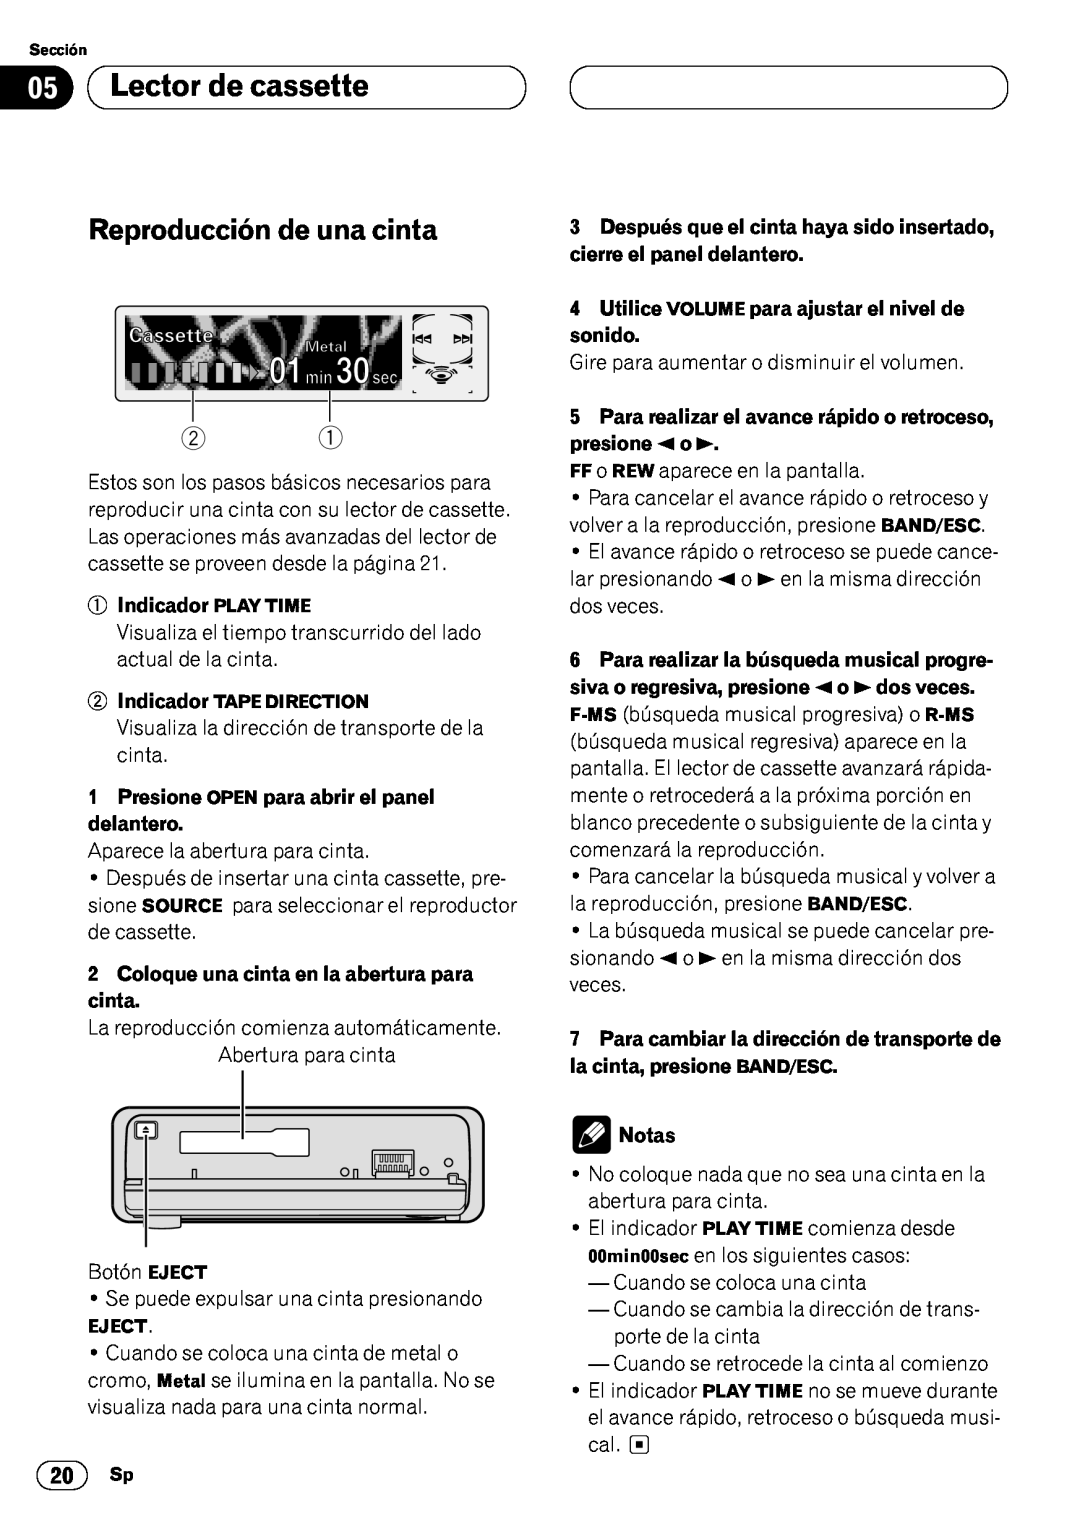 Pioneer KEH-P7020R operation manual 05Lector de cassette, Reproducción de una cinta, 1Indicador PLAY TIME, Notas 